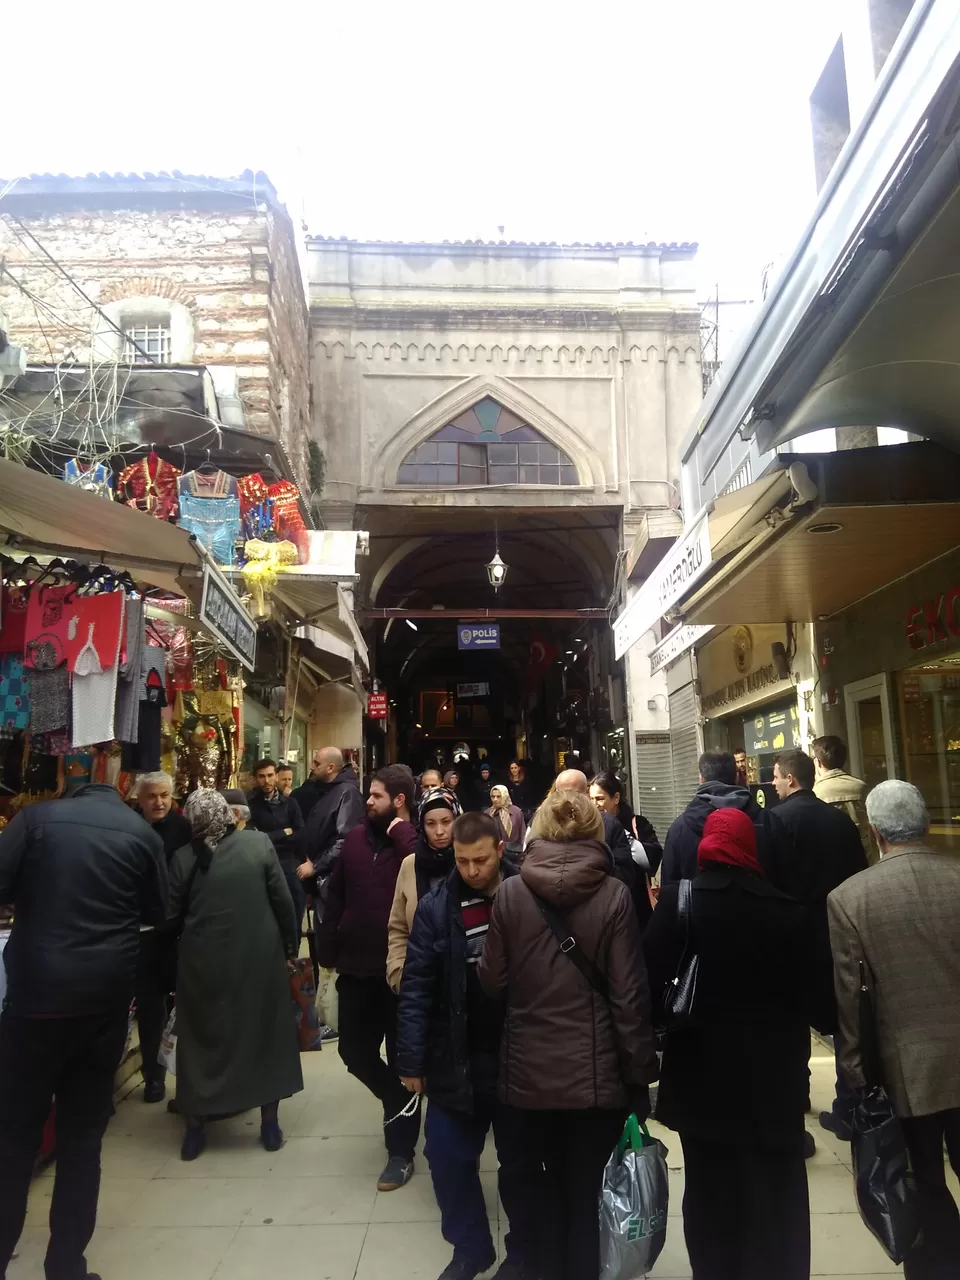 Photo of Beyazıt Mahallesi, Grand Bazaar, Kalpakçılar Caddesi, Fatih/Istanbul, Turkey by TwoMuchTogether